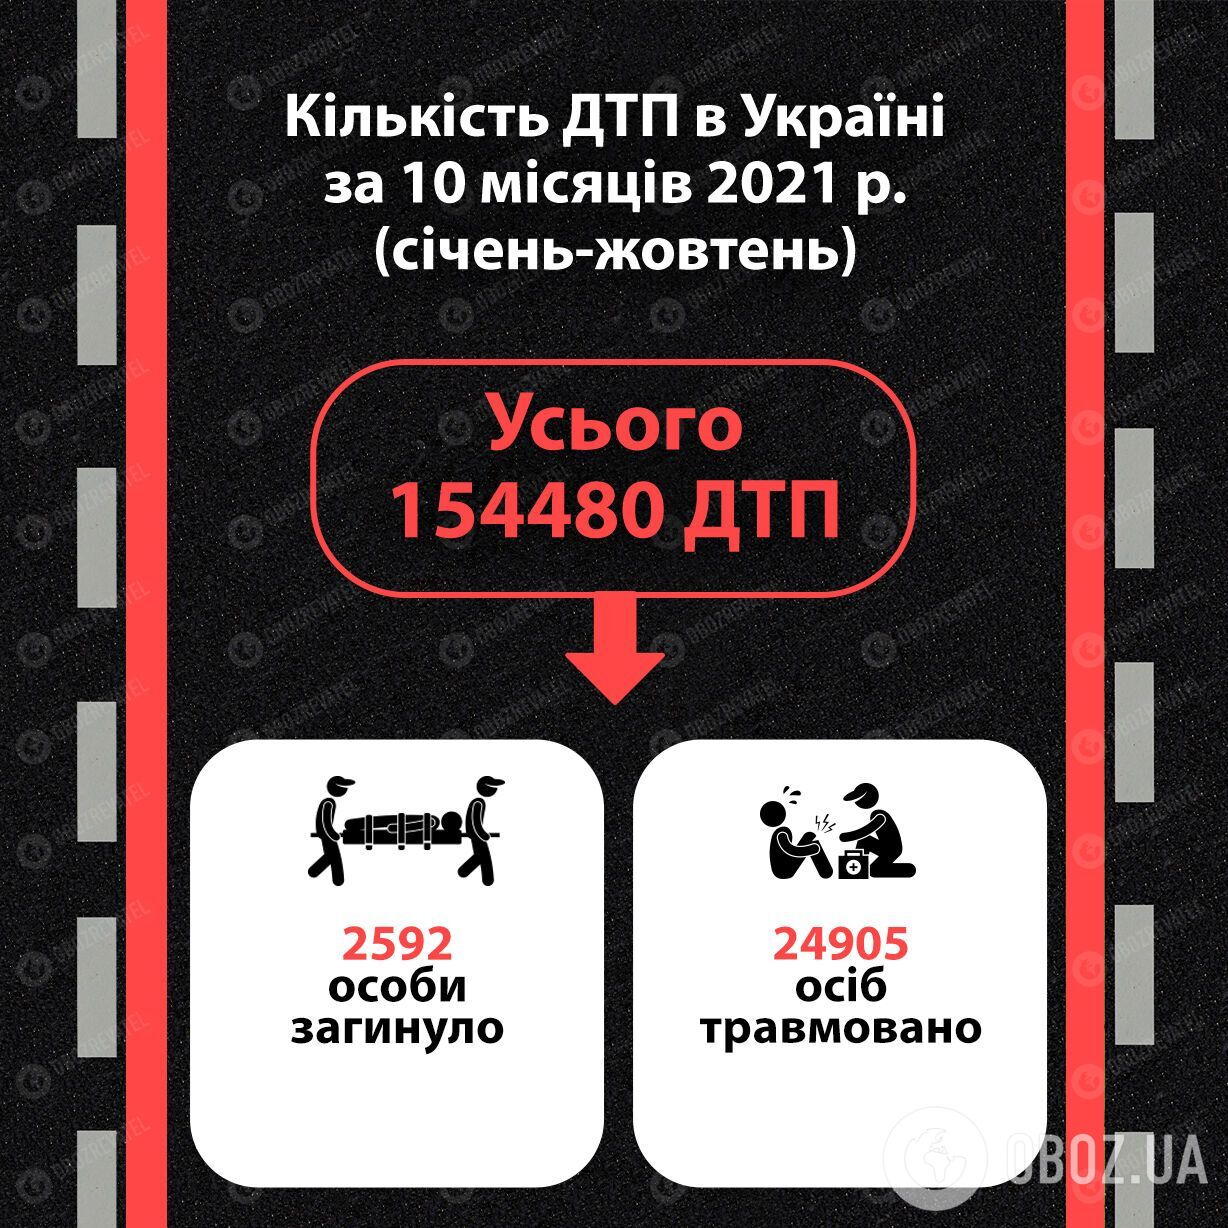 Статистика ДТП в Україні за перші 10 місяців 2021 року